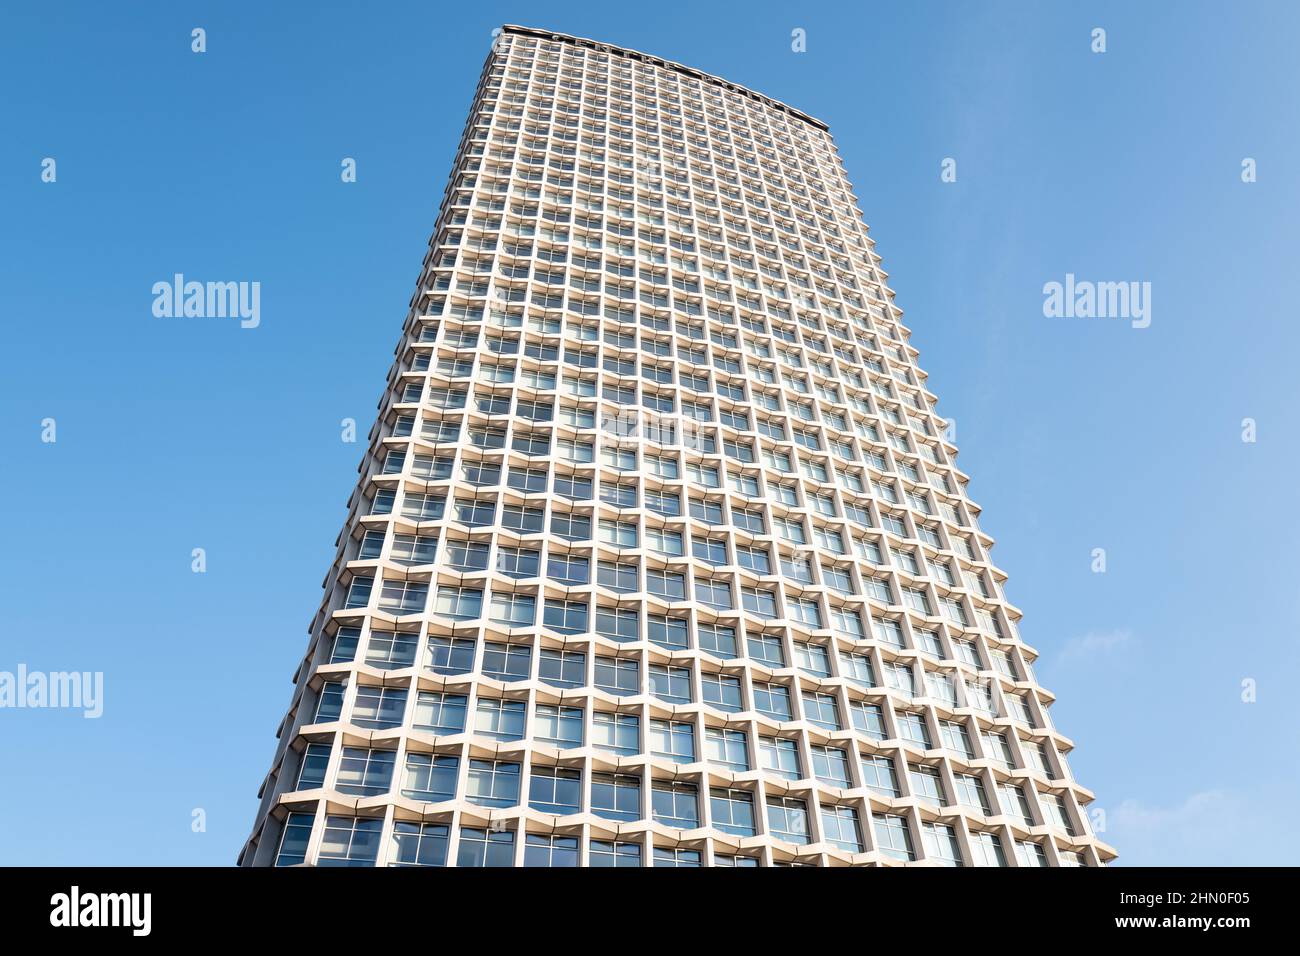 Centre point Londres Royaume-Uni. Architecte George Marsh. Le centre point est un bâtiment de 34 étages qui surplombe le Cirque St Giles. Construit vers 1963. Banque D'Images